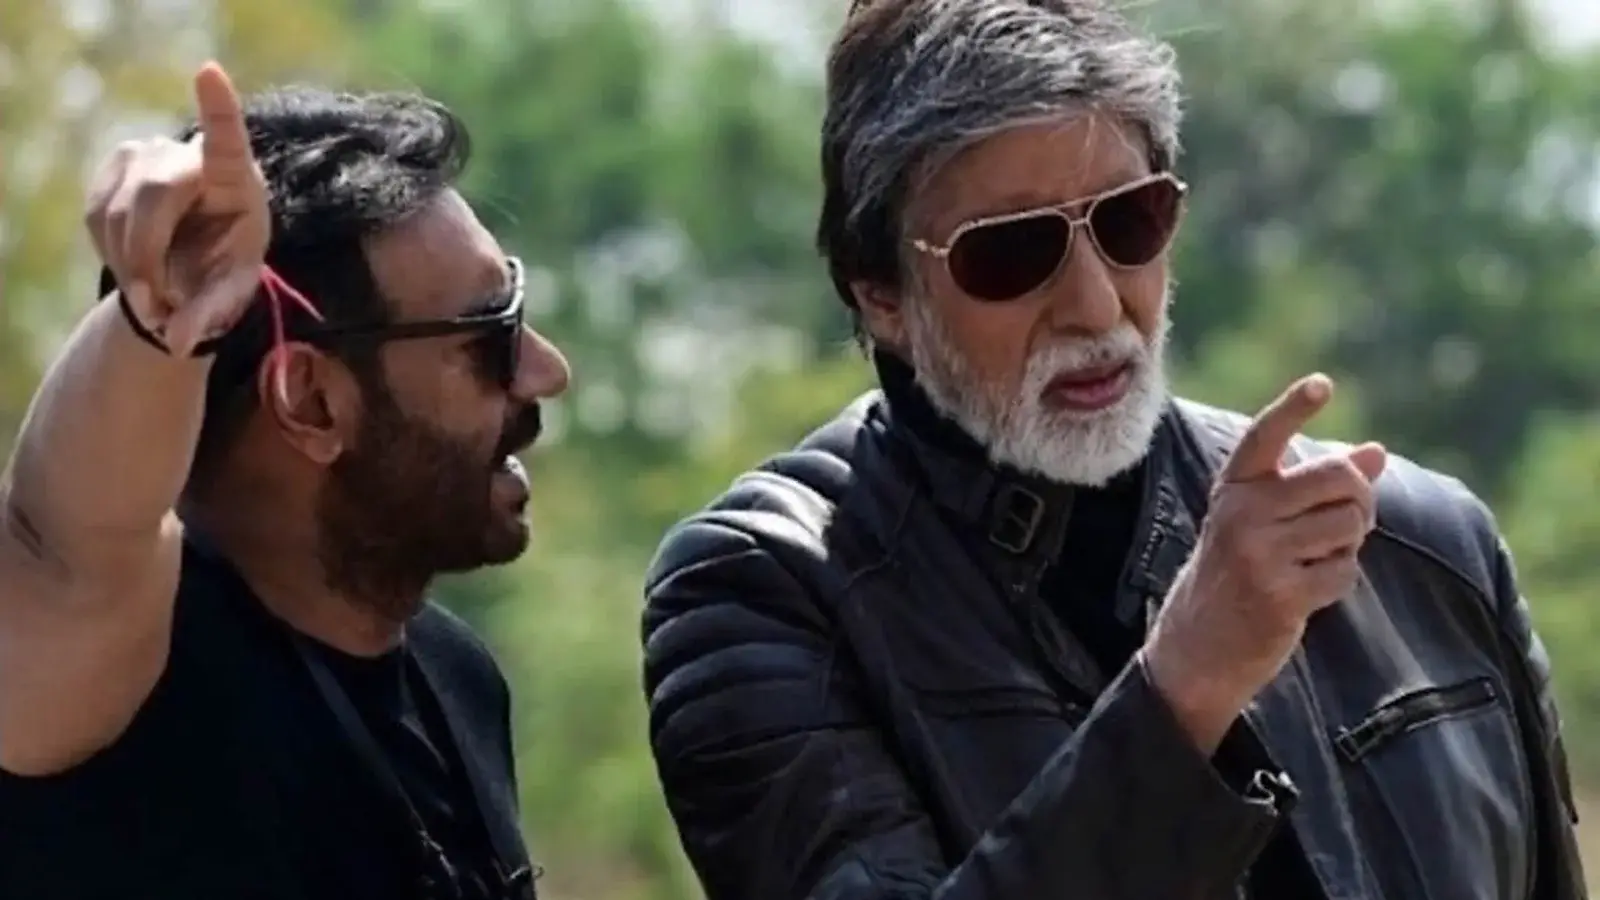 अमिताभ बच्चन 'आरे यार' गए क्योंकि अजय देवगन ने उन्हें इंस्टा पोस्ट में शामिल नहीं किया
